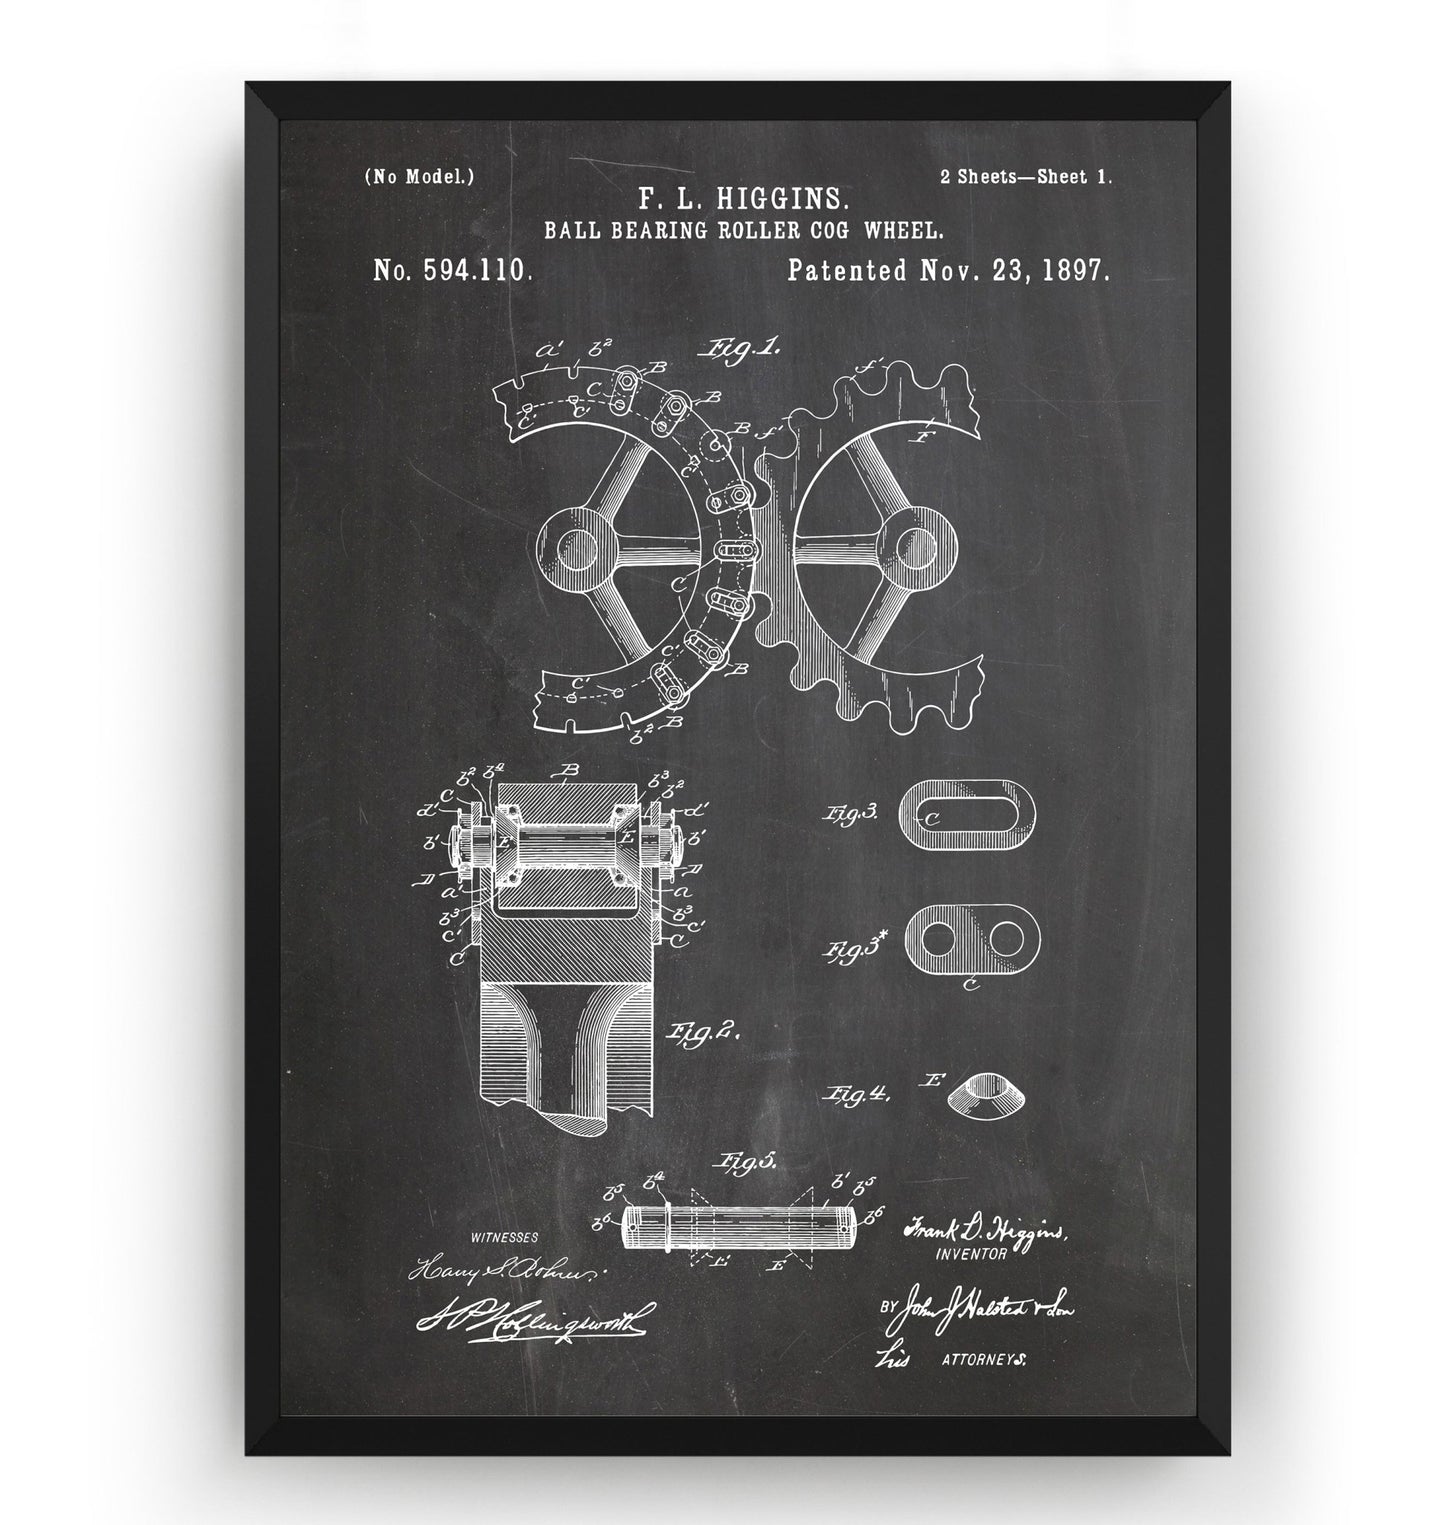 Ball Bearing Roller Cogwheel 1897 Patent Print - Magic Posters